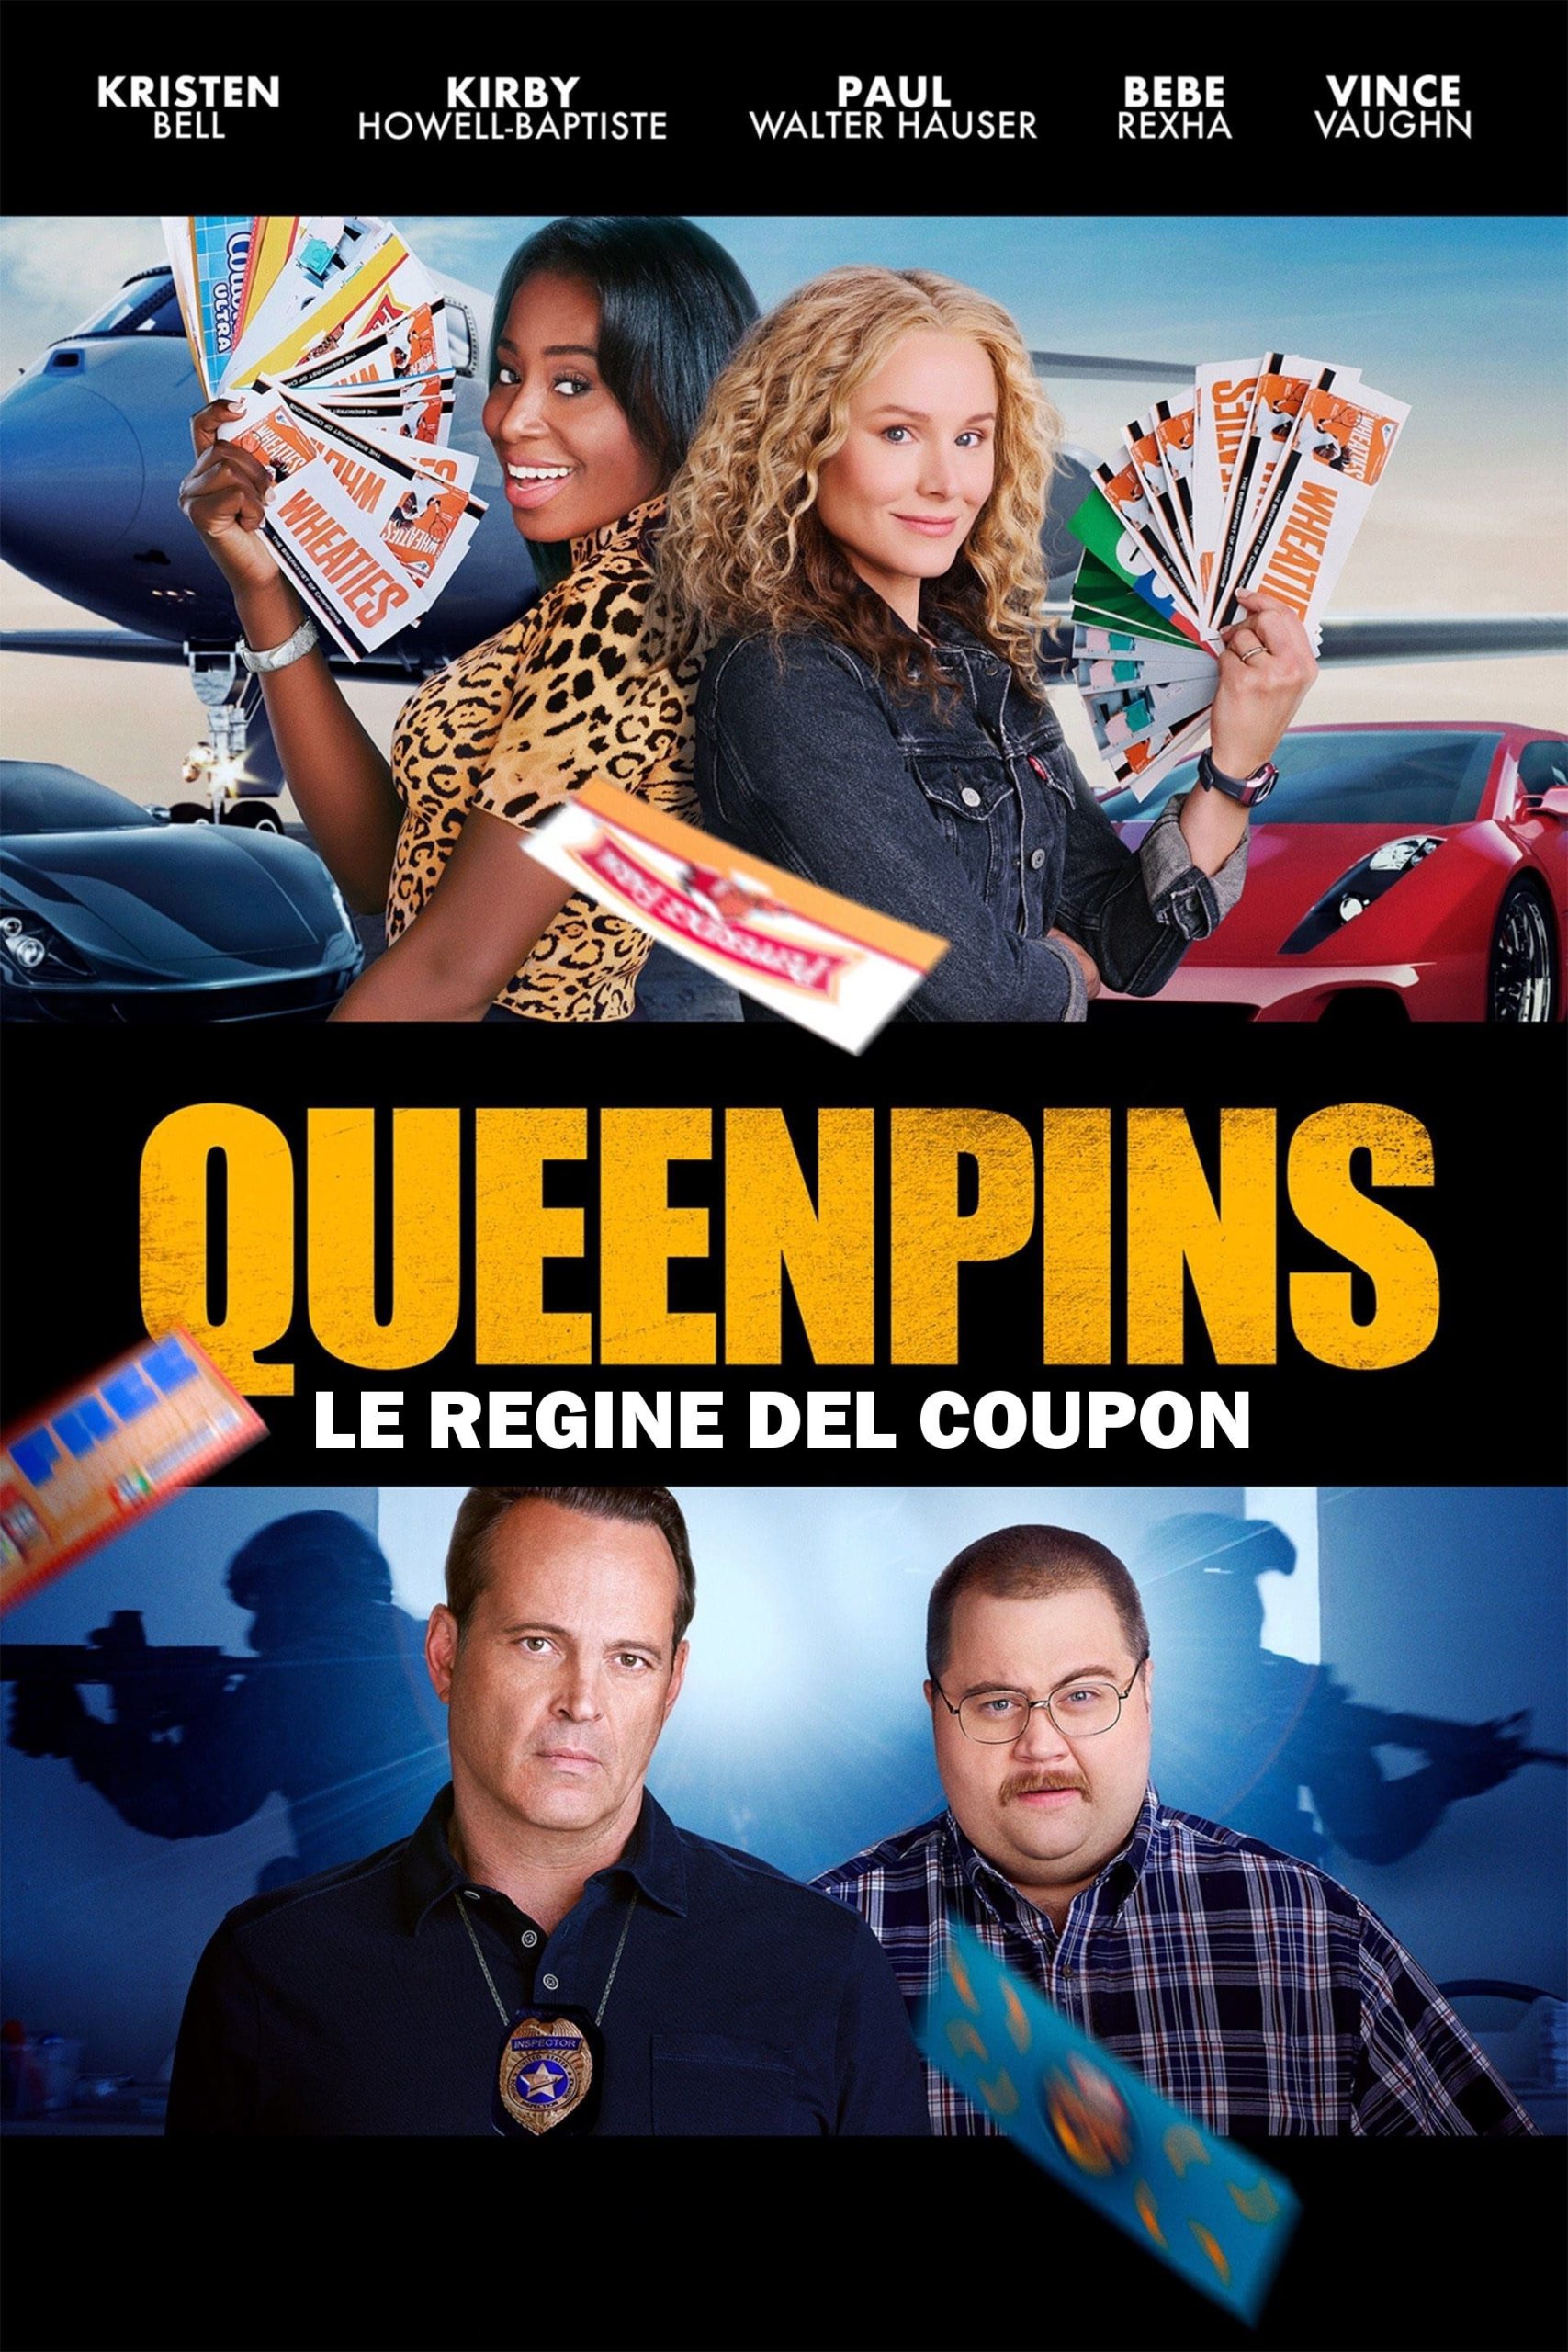 Queenpins – Le regine del coupon [HD] (2021)